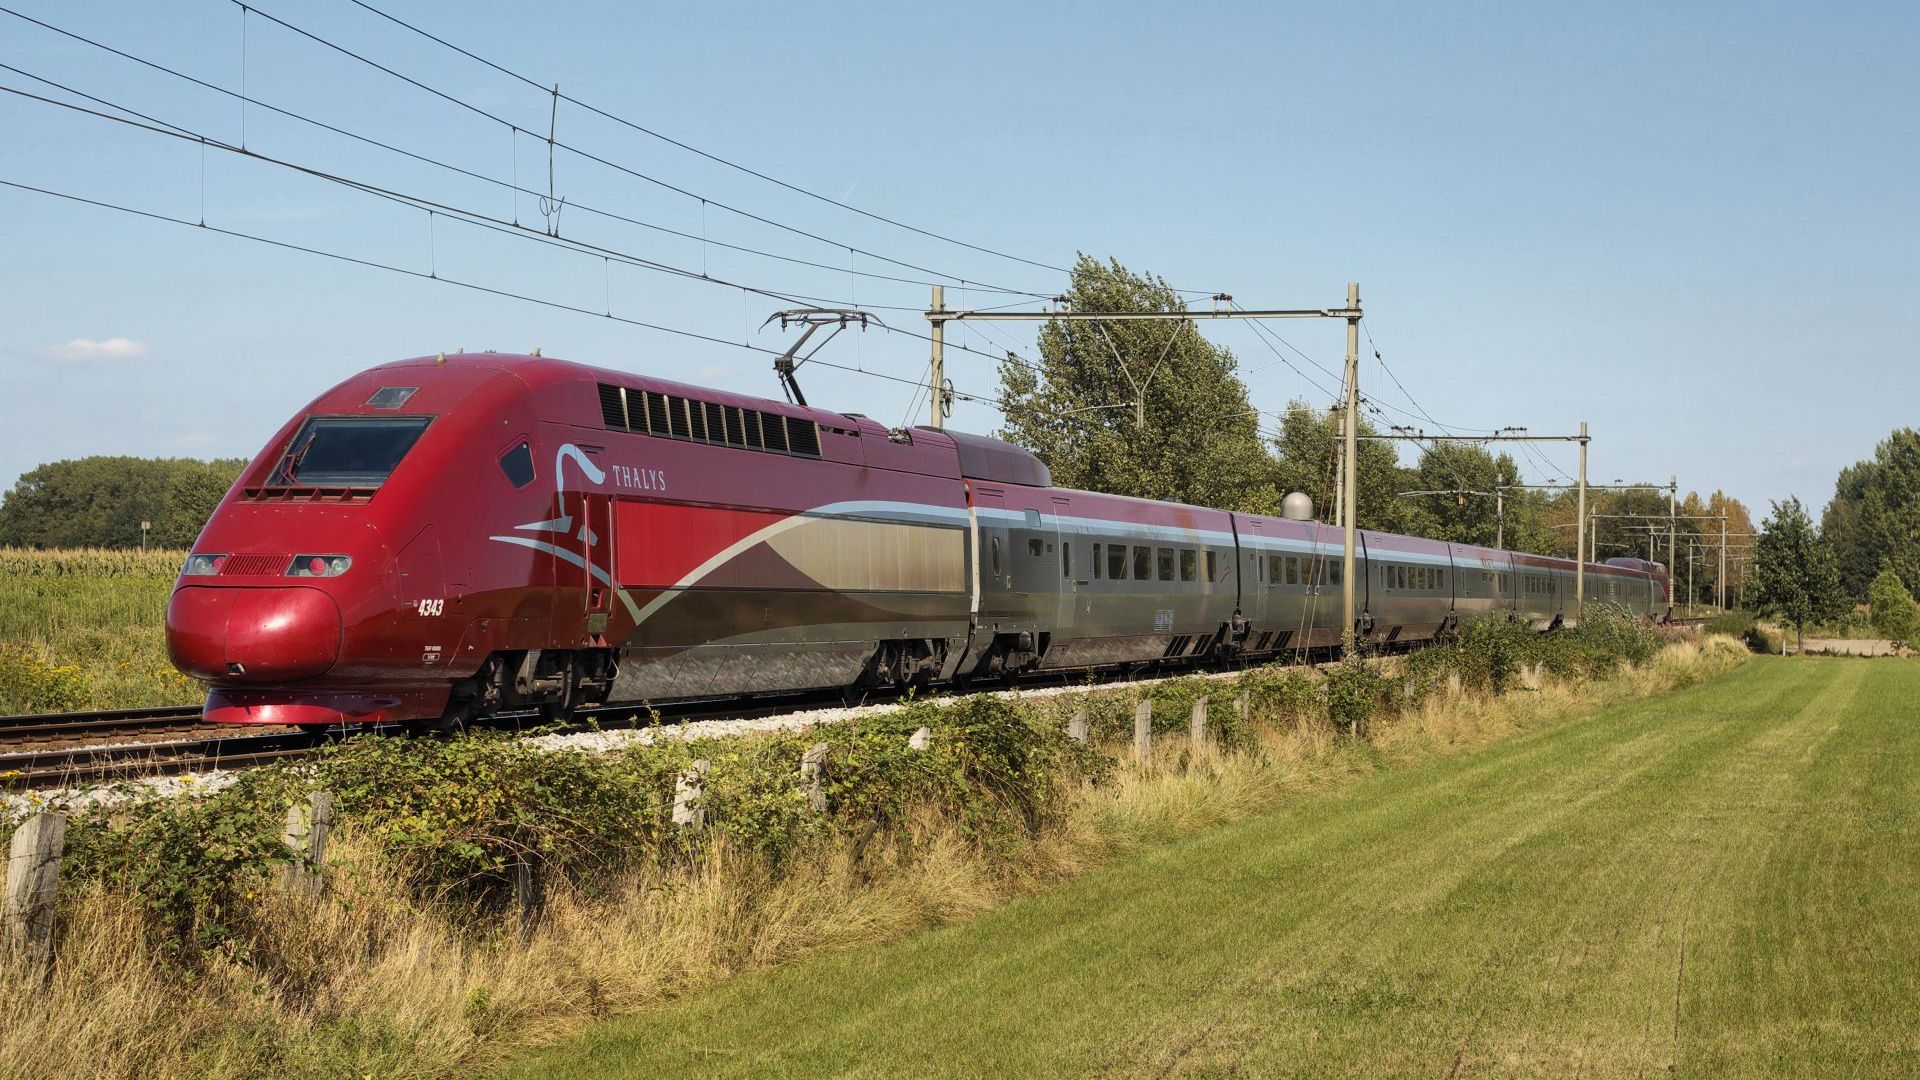 Френско белгийската железопътна компания Талис обяви че спира продажбата на билети